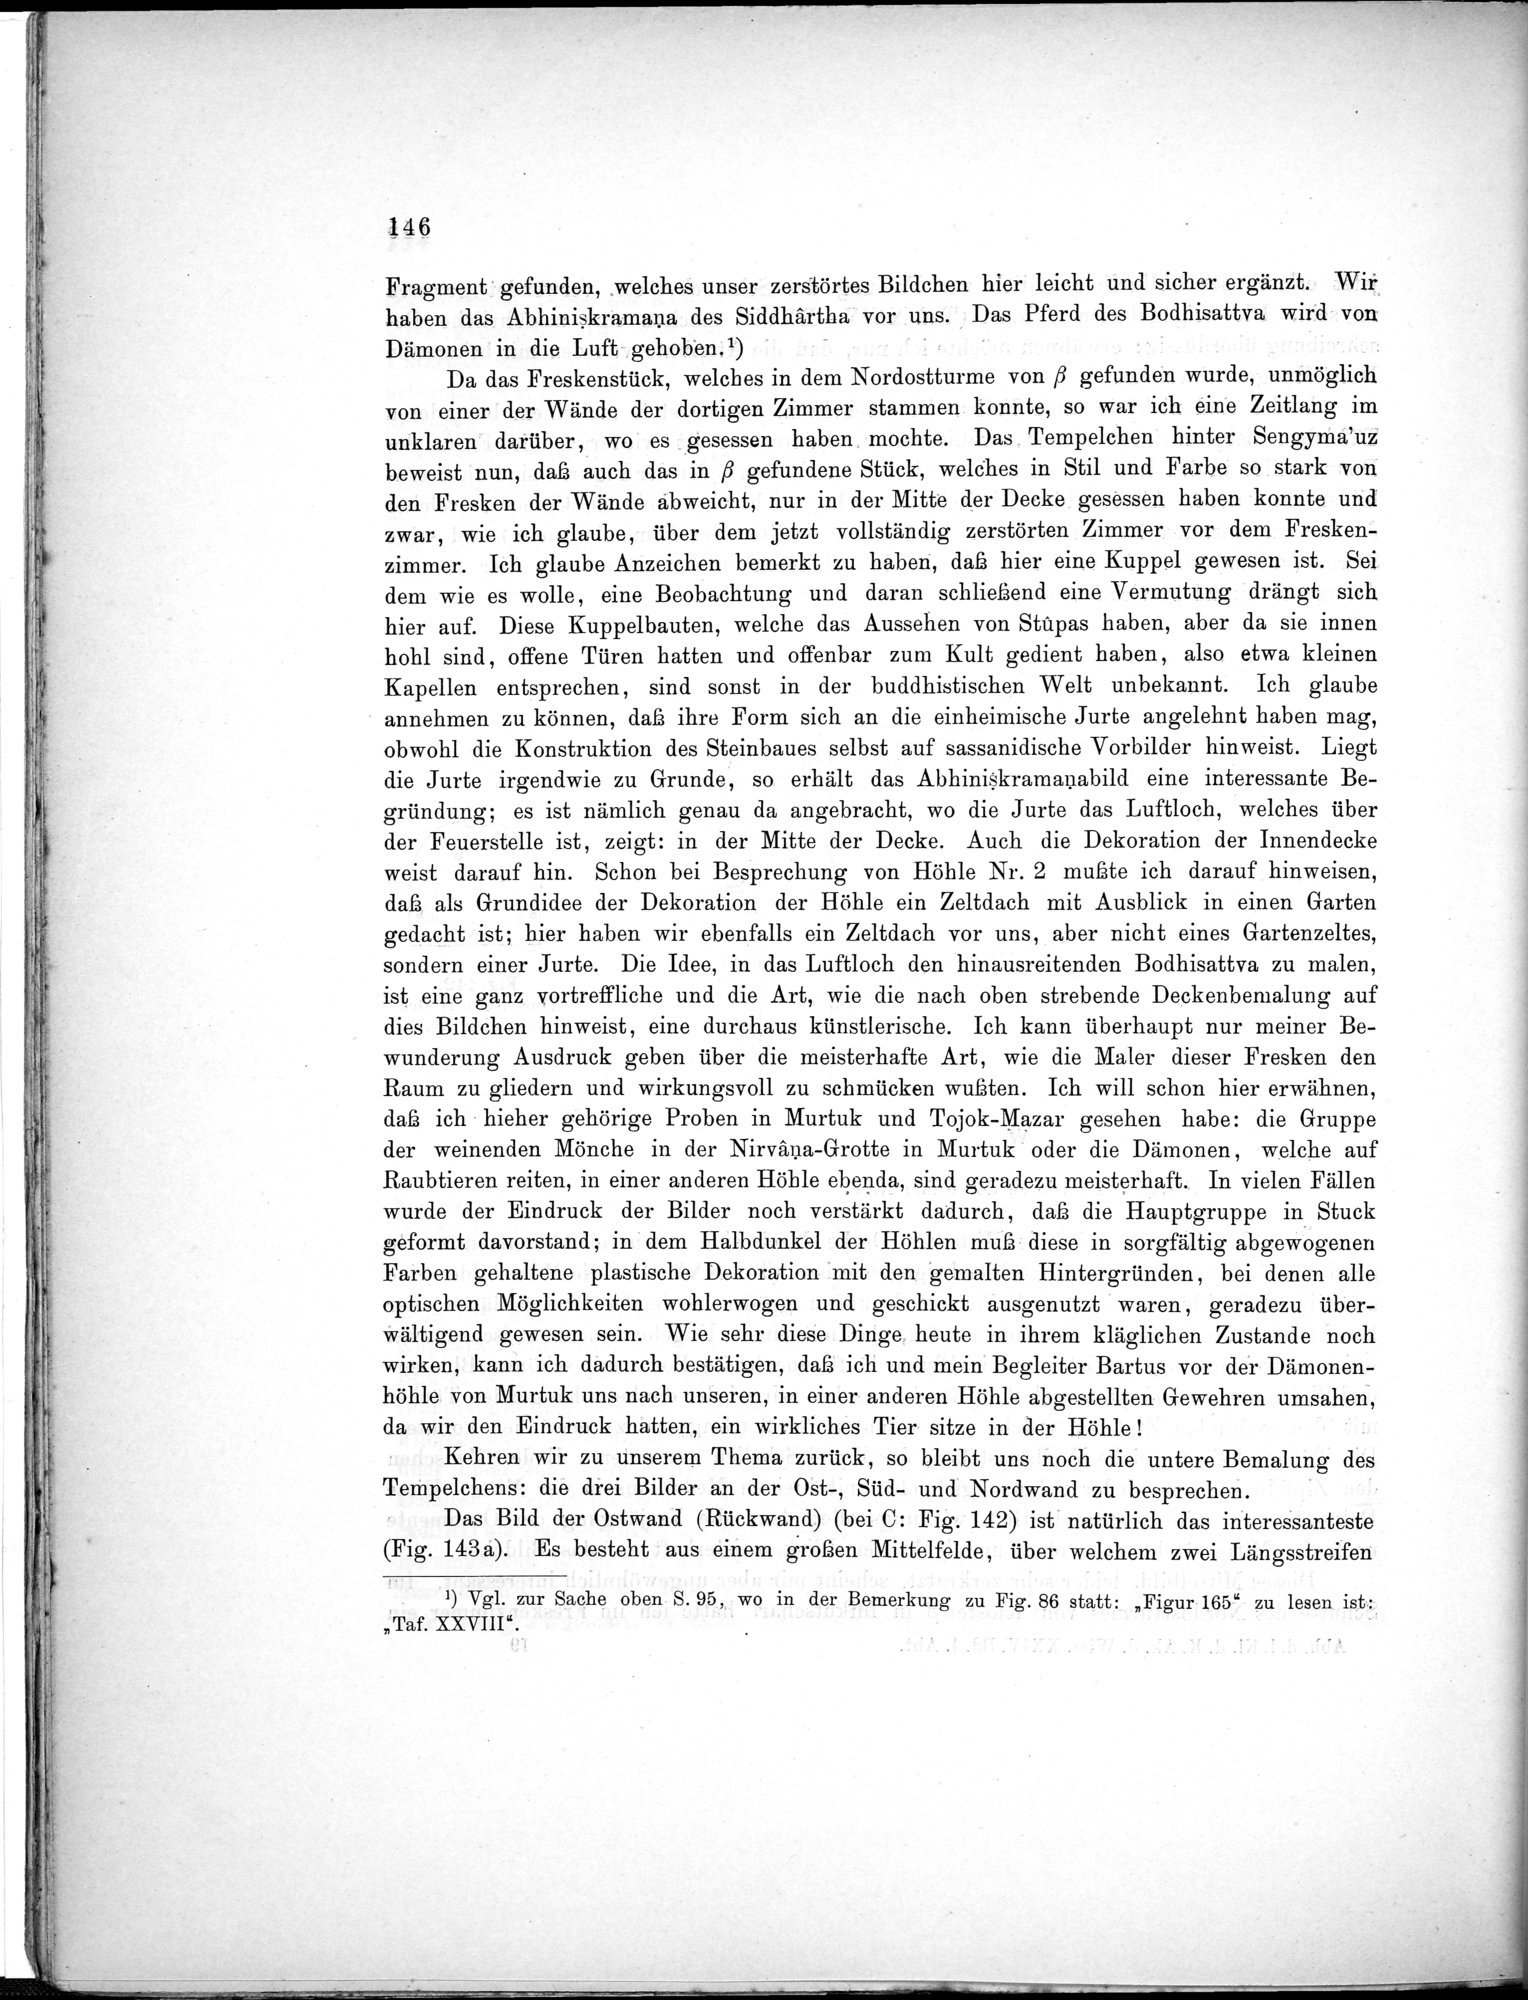 Bericht über archäologische Arbeiten in Idikutschari und Umgebung im Winter 1902-1903 : vol.1 / Page 156 (Grayscale High Resolution Image)